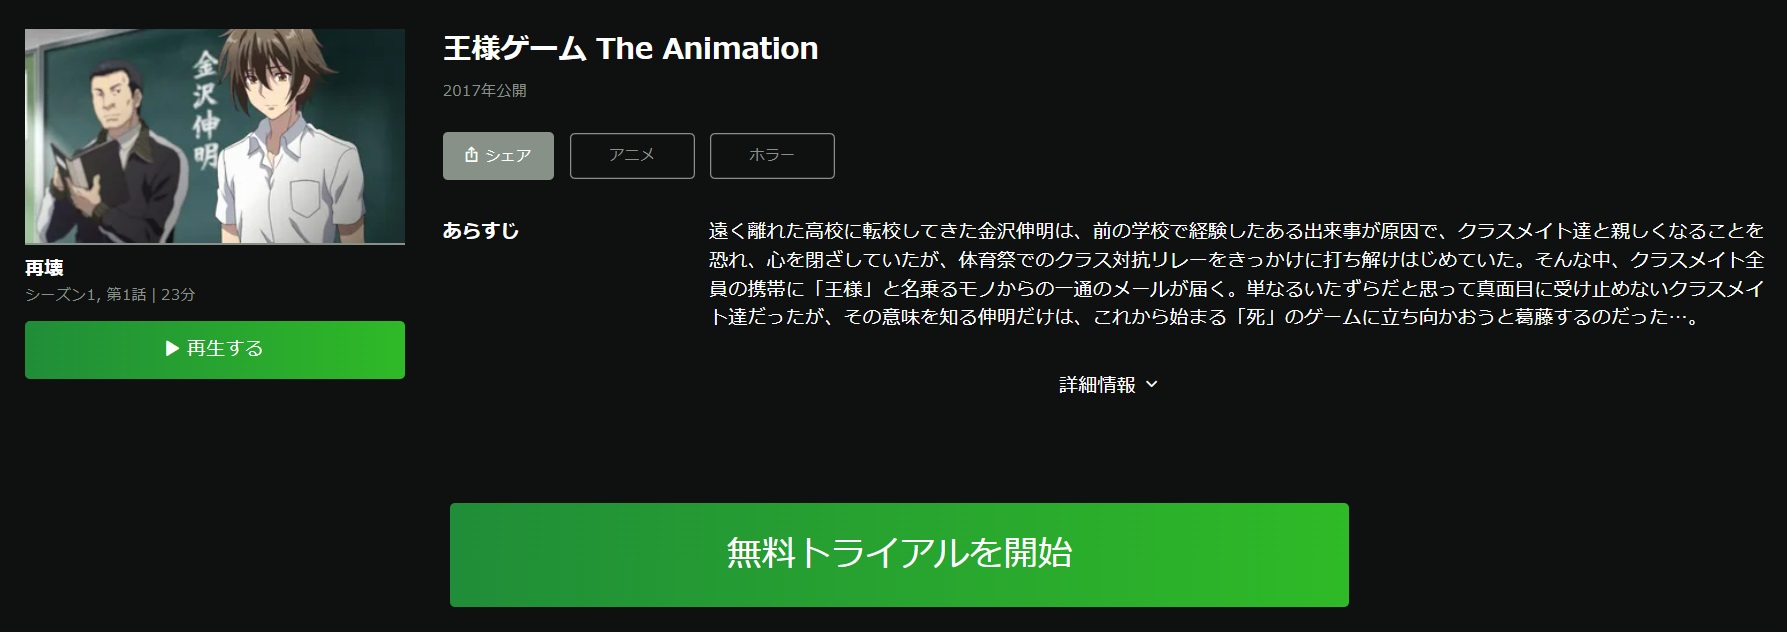 王様ゲーム The Animation